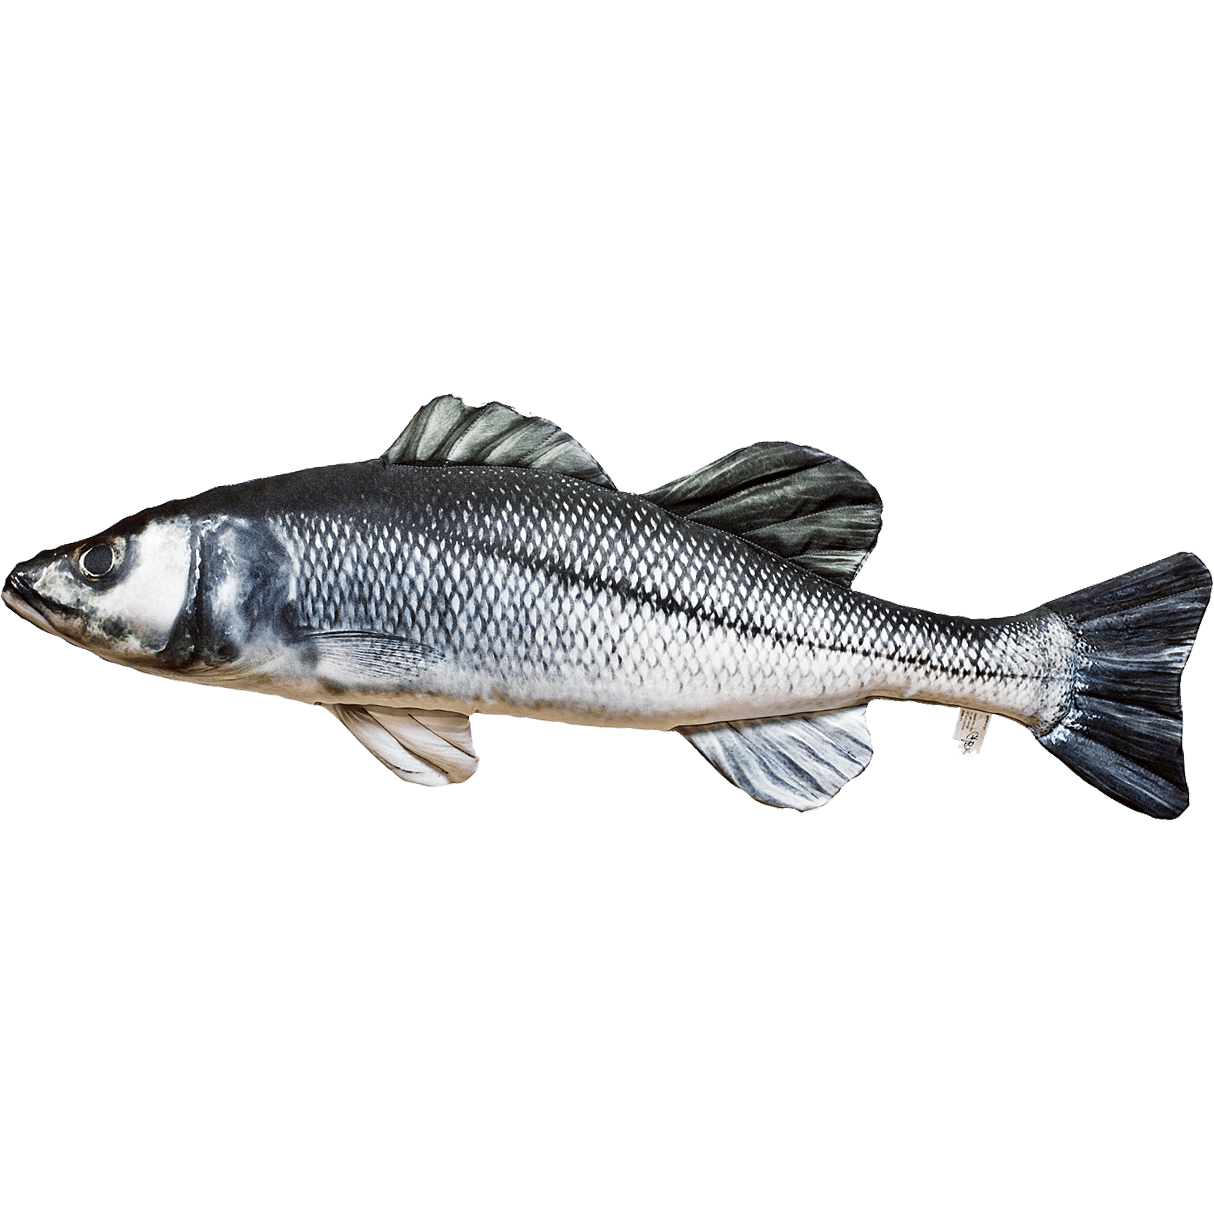 Sea Bass Fish Cushion Nauticalia 56136 71cm